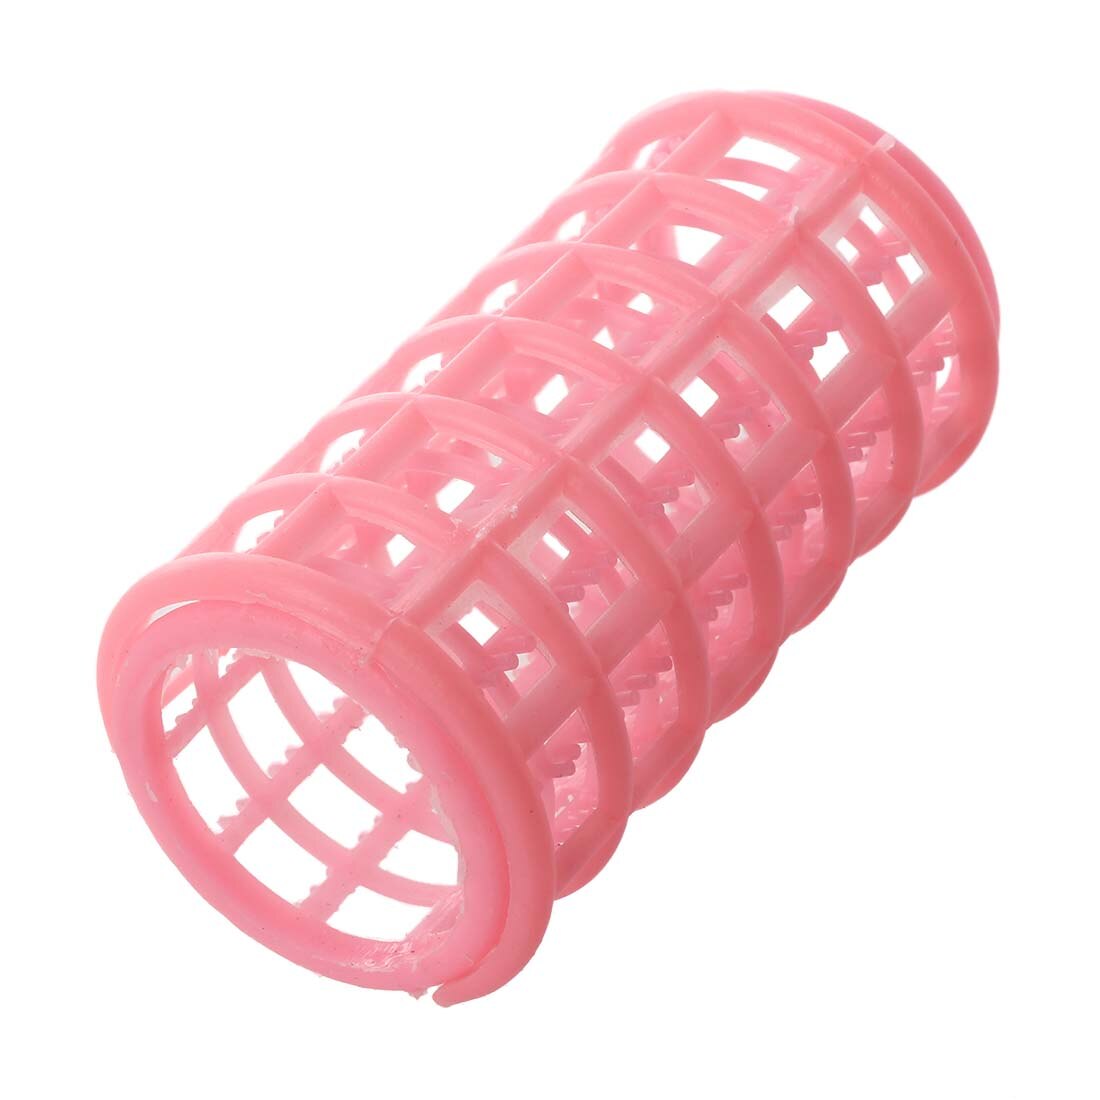 Hhff dame pink plastik magic circle hair styling roller curler 10 stk